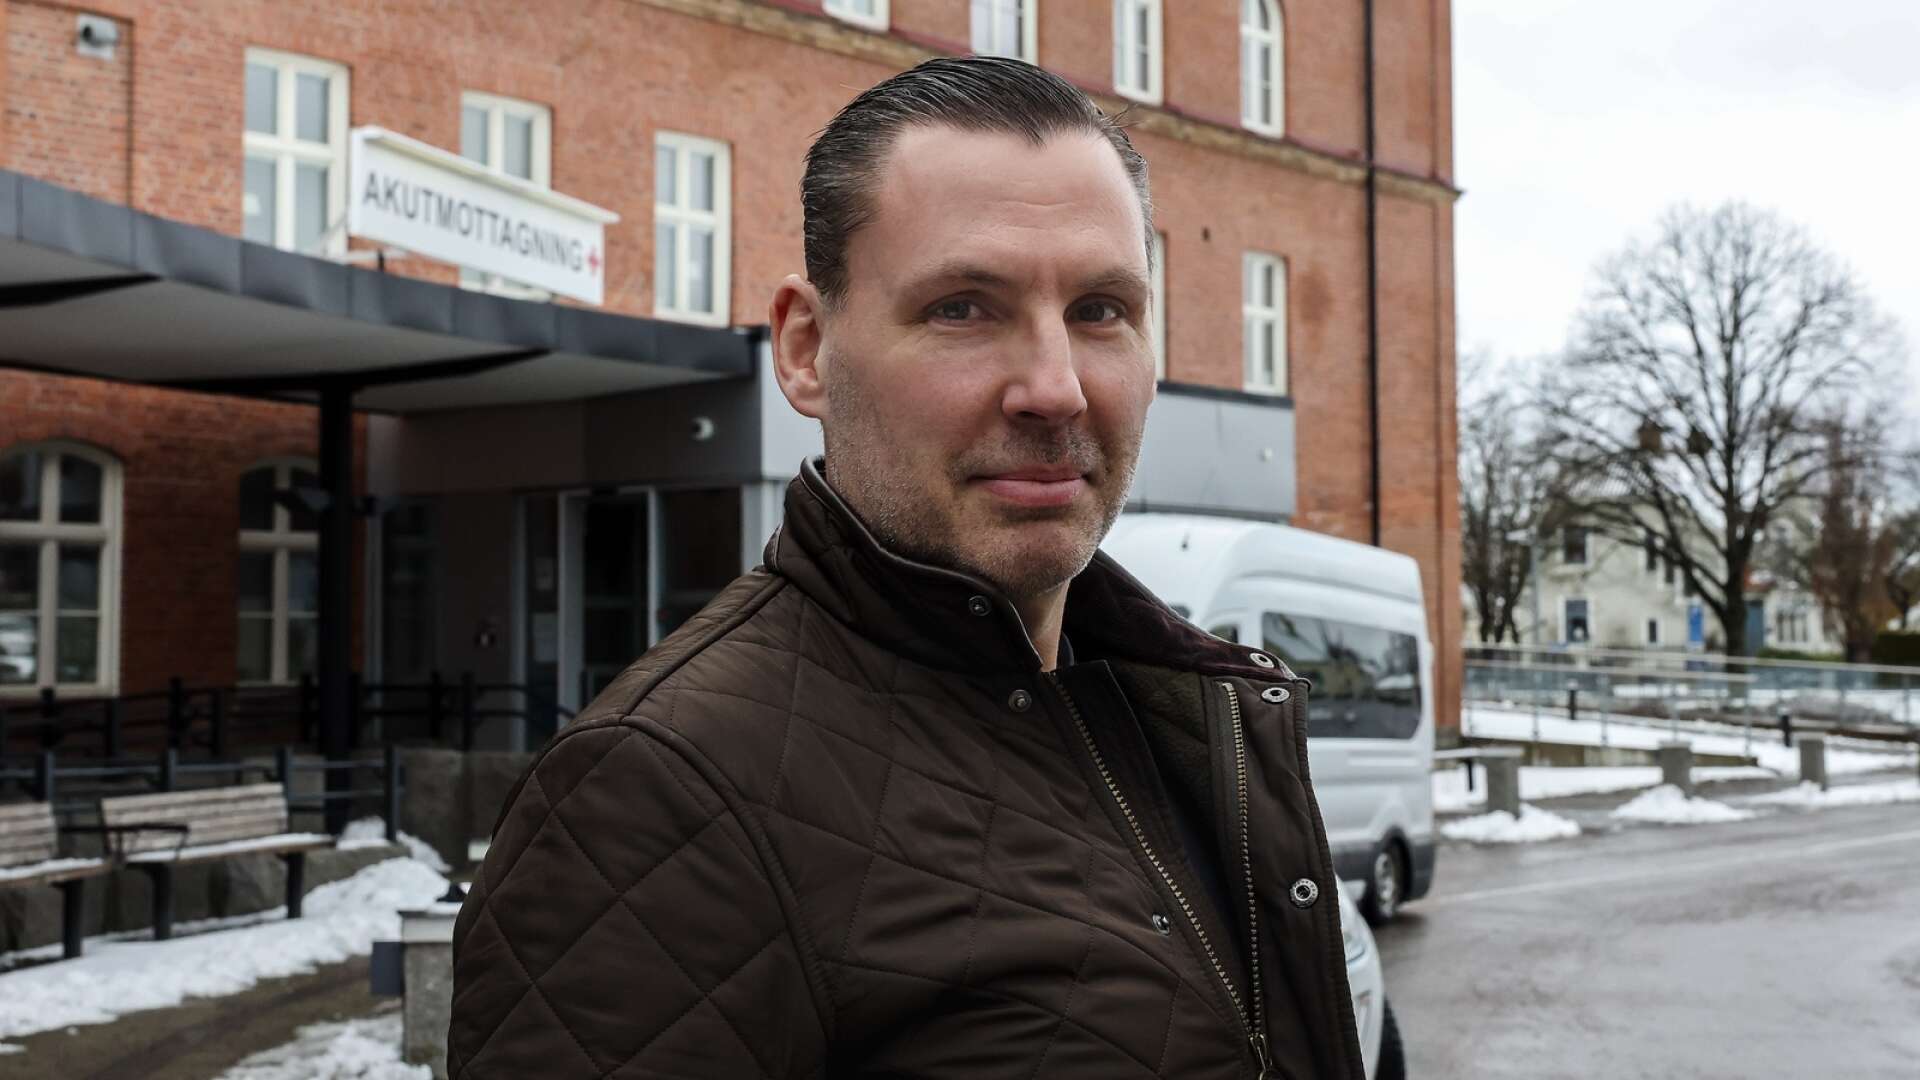 Erland Pettersson har nu valt att säga upp sig som sjuksköterska på akuten i Lidköping efter all turbulens. Nu kommer han att söka sig efter annat jobb.